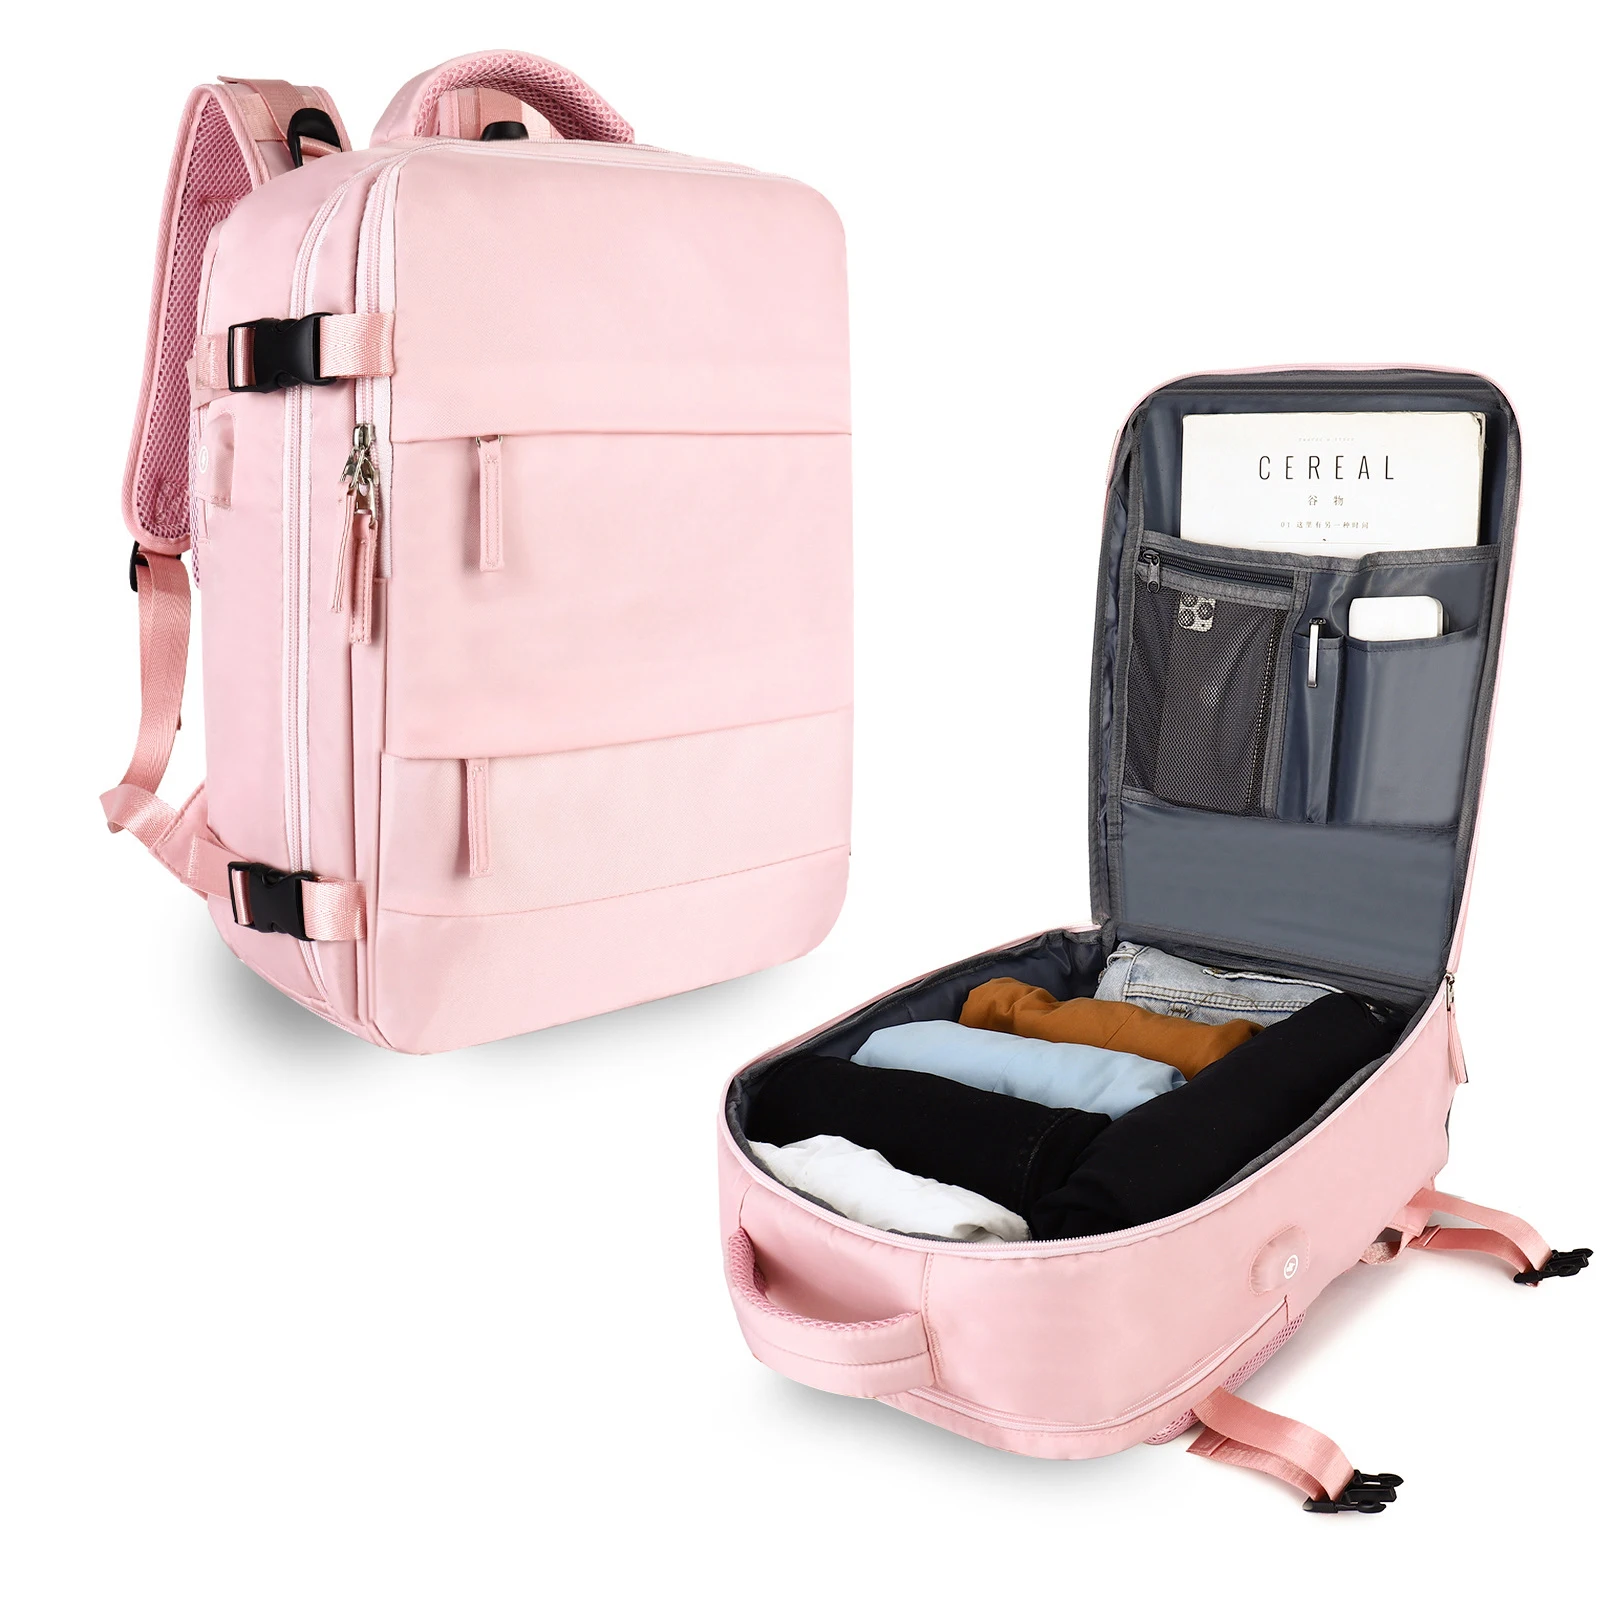 

Многофункциональный рюкзак для самолета, водонепроницаемый вместительный женский спортивный легкий ранец розового цвета для путешествий с зарядкой